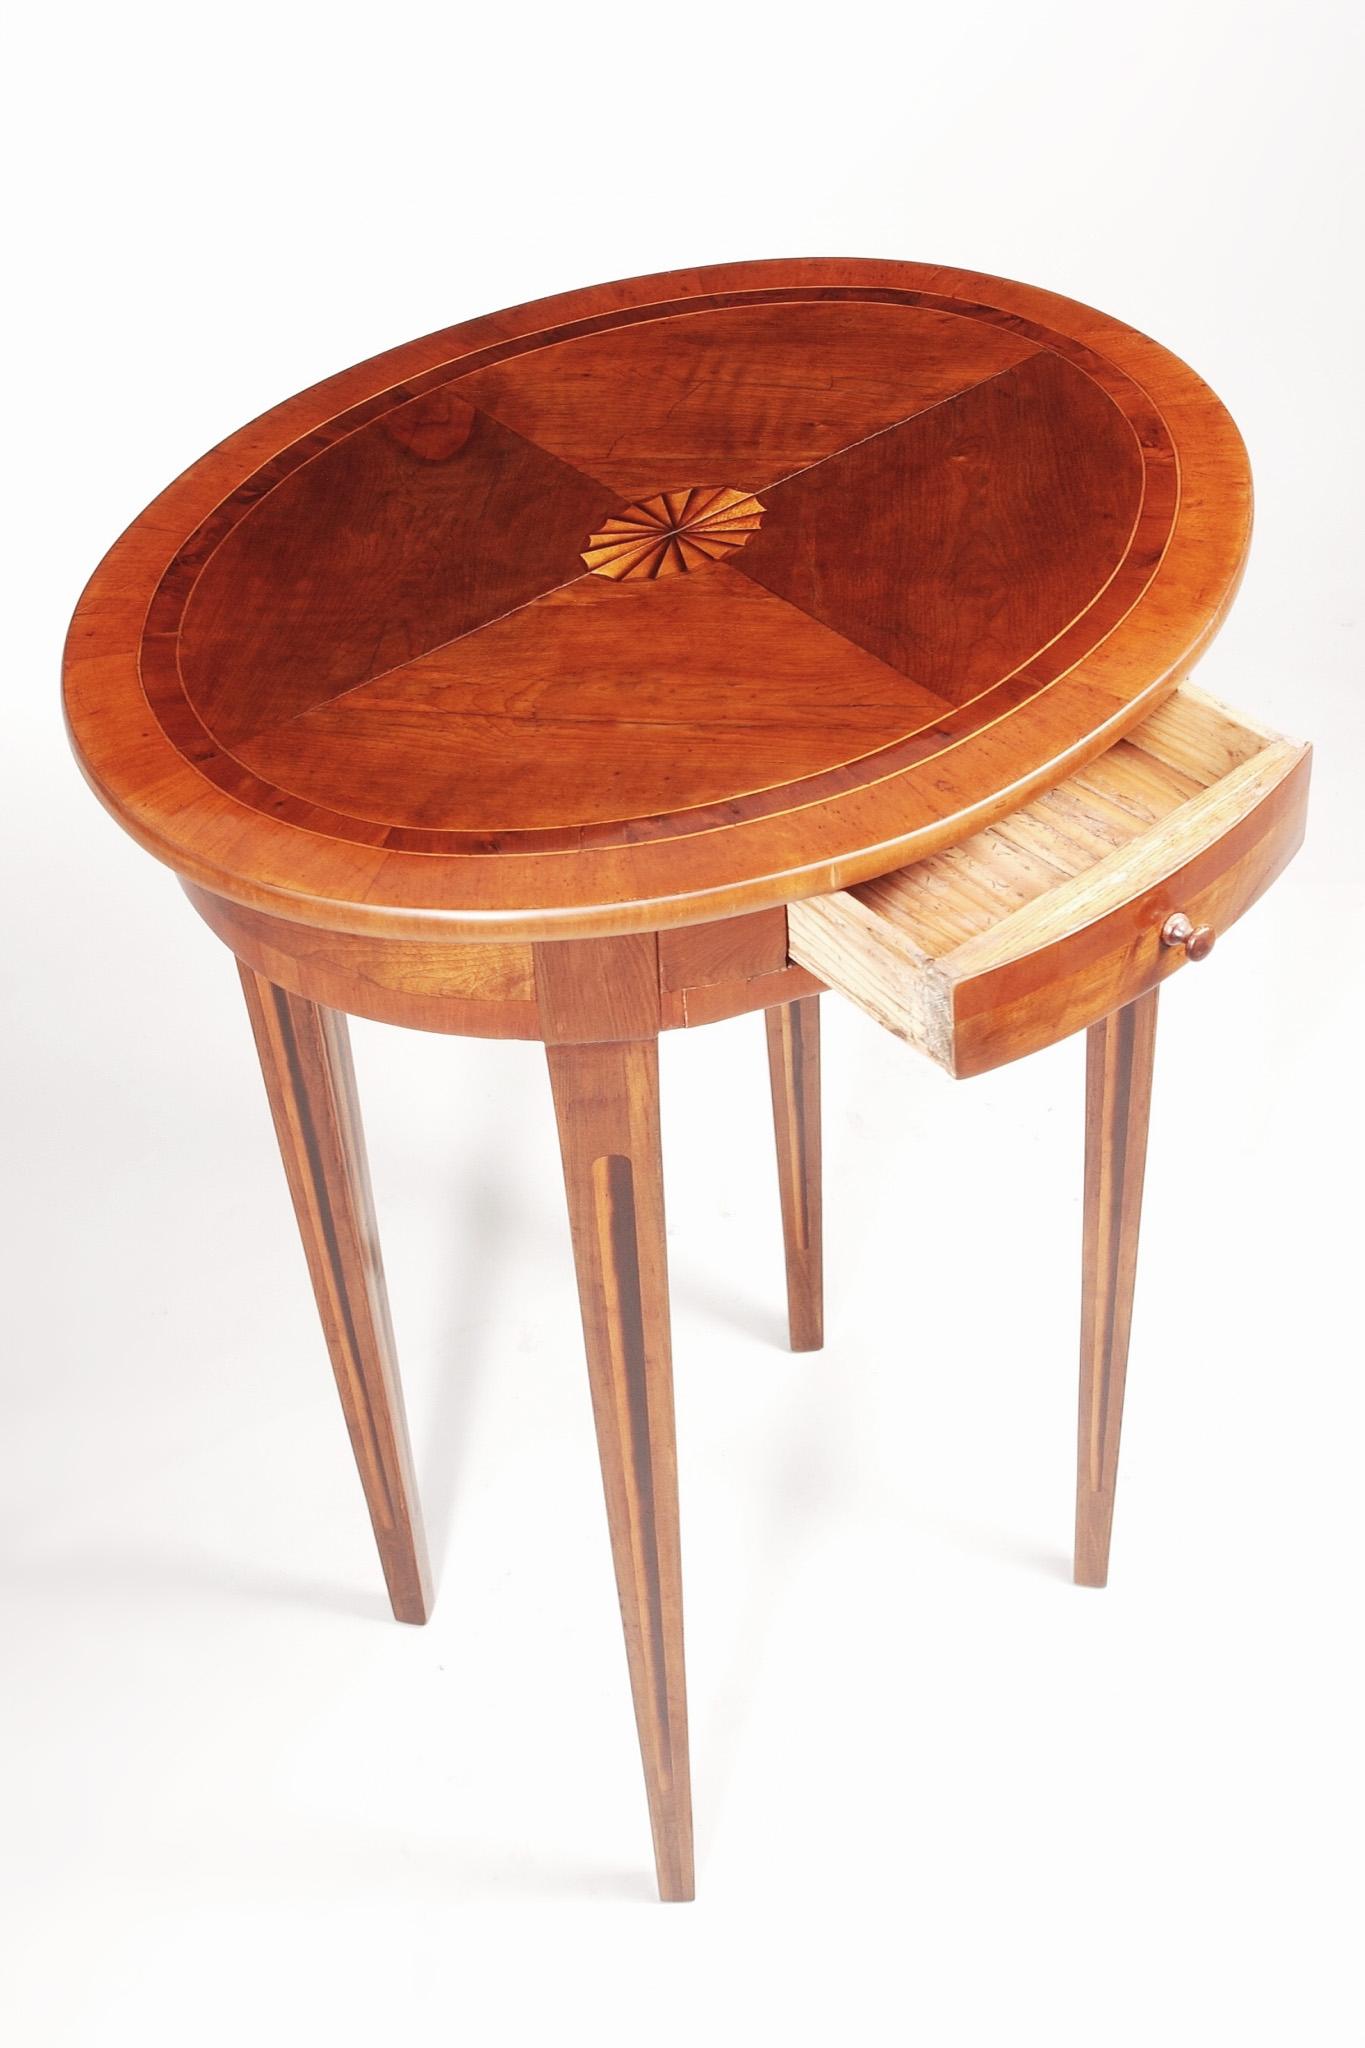 Classique tchèque Petite table Biedermeier.
Période : 1810-1819
Matériau : Arbre d'if
Polissage à la gomme-laque.